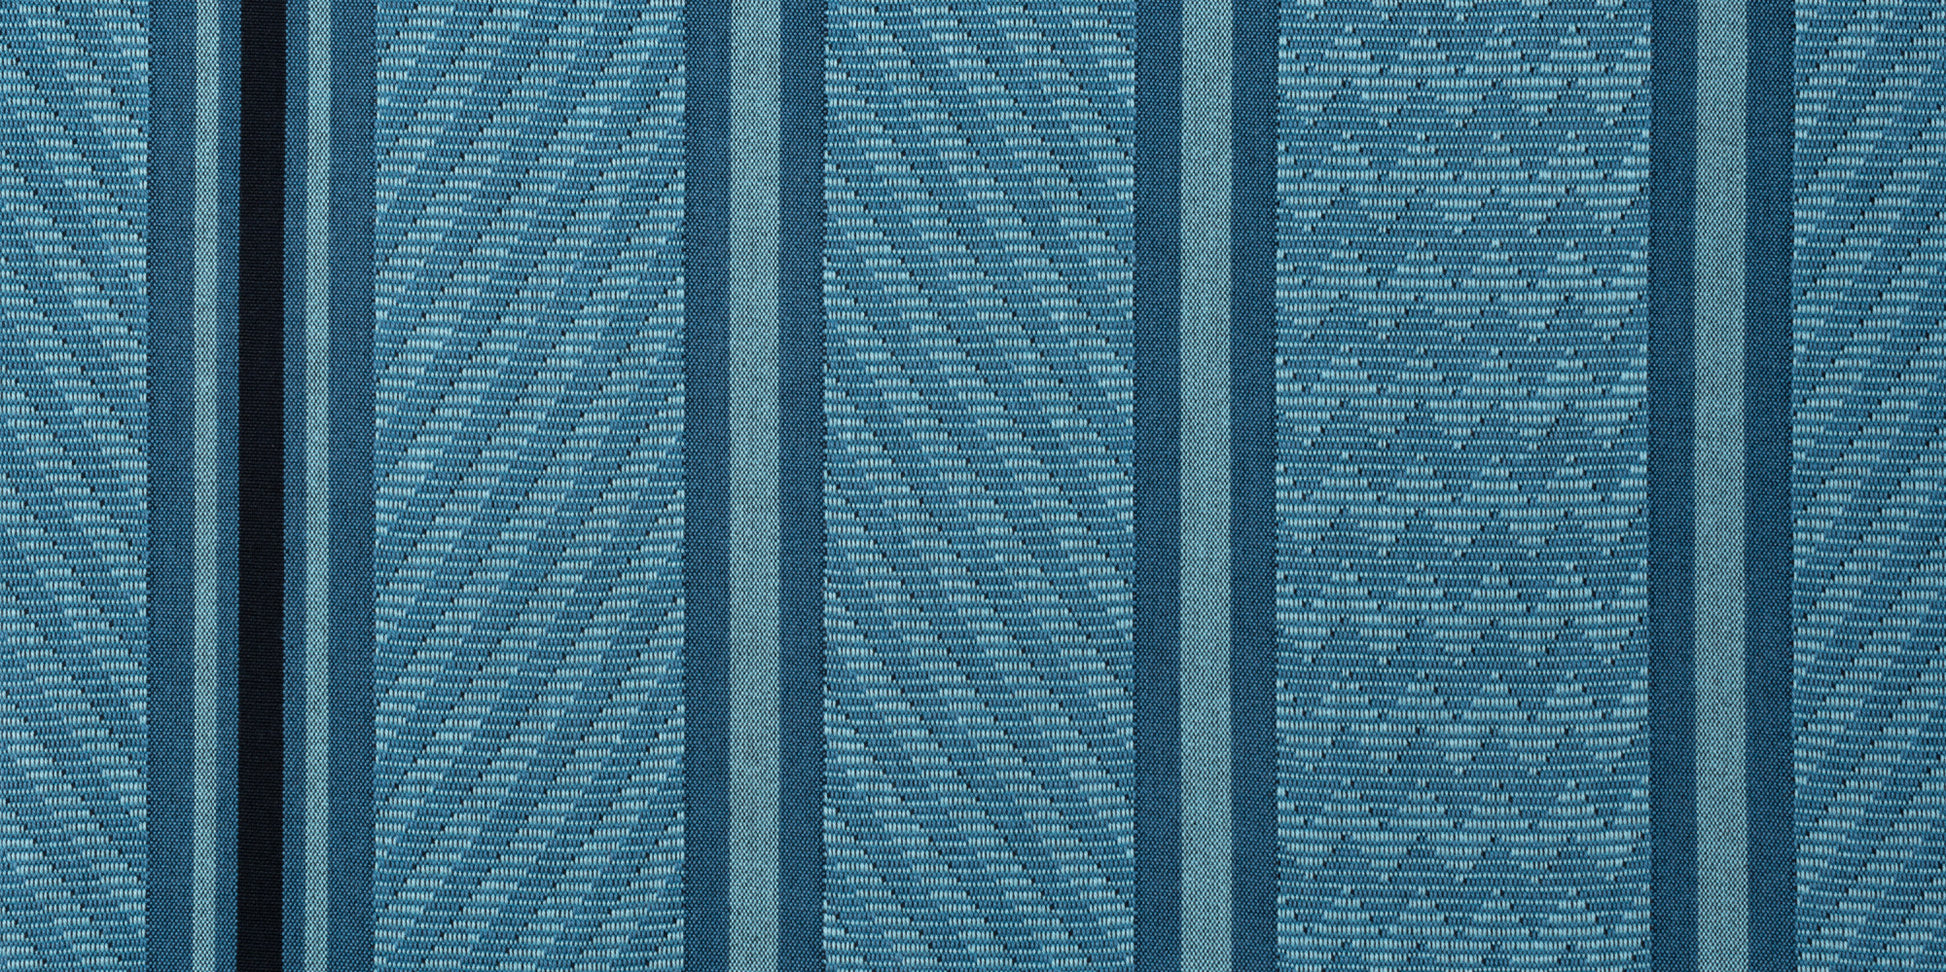 Flora Blue Zebra - Klassische Kingsize-Hängematte aus Bio-Baumwolle